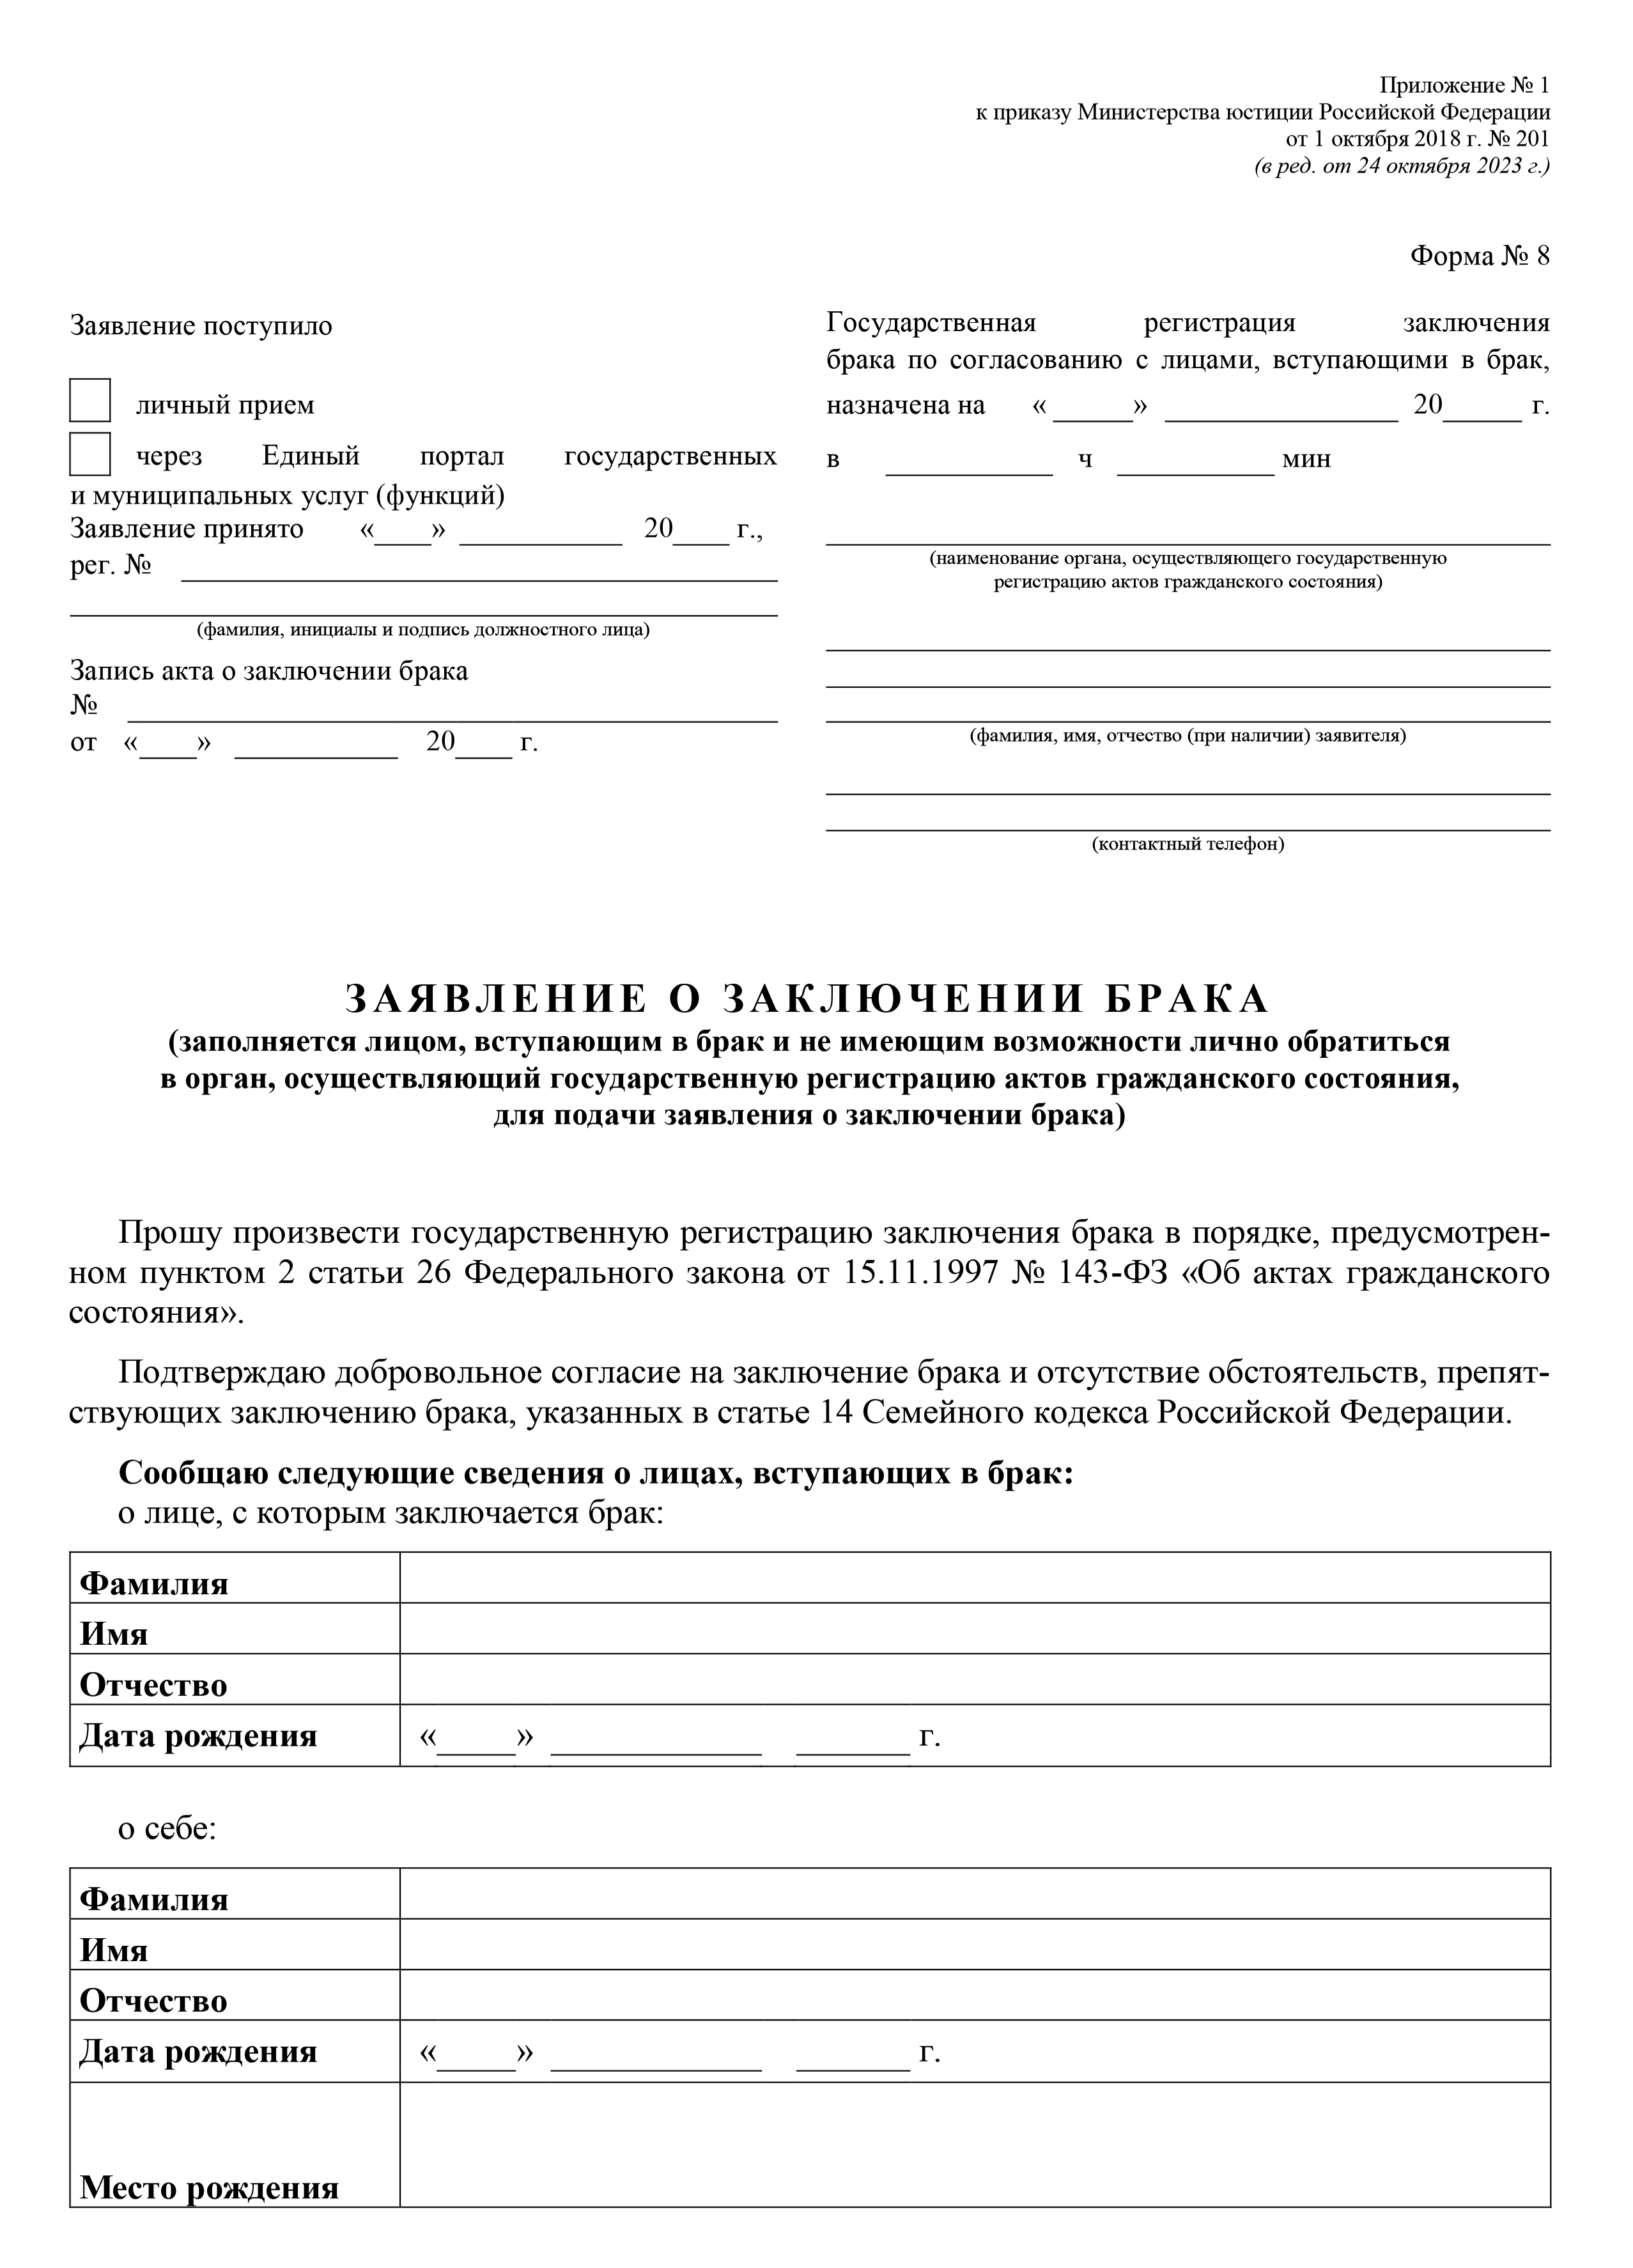 Подача заявления в ЗАГС на регистрацию брака